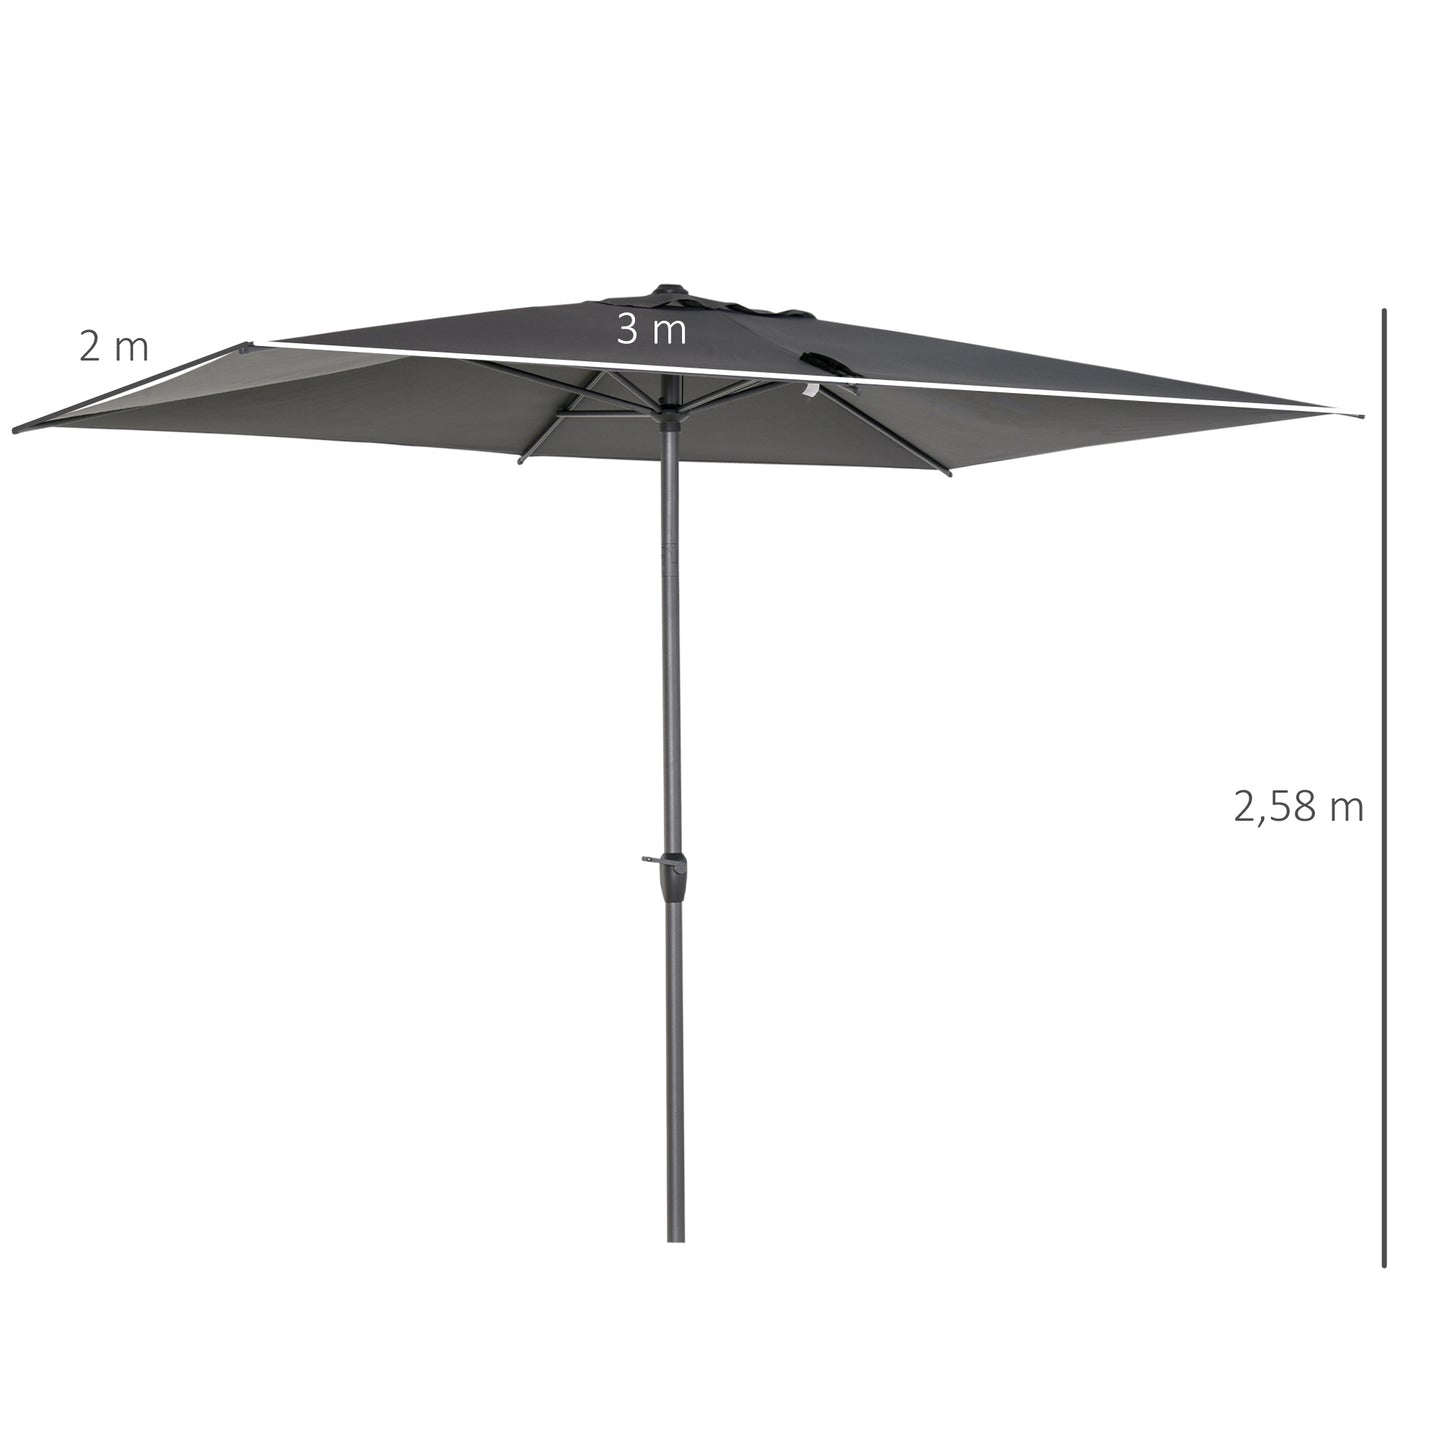 Outsunny Garden Sun Umbrella Patio Parasol w/ Tilt Crank Adjustable Angle 3 x 2m Grey